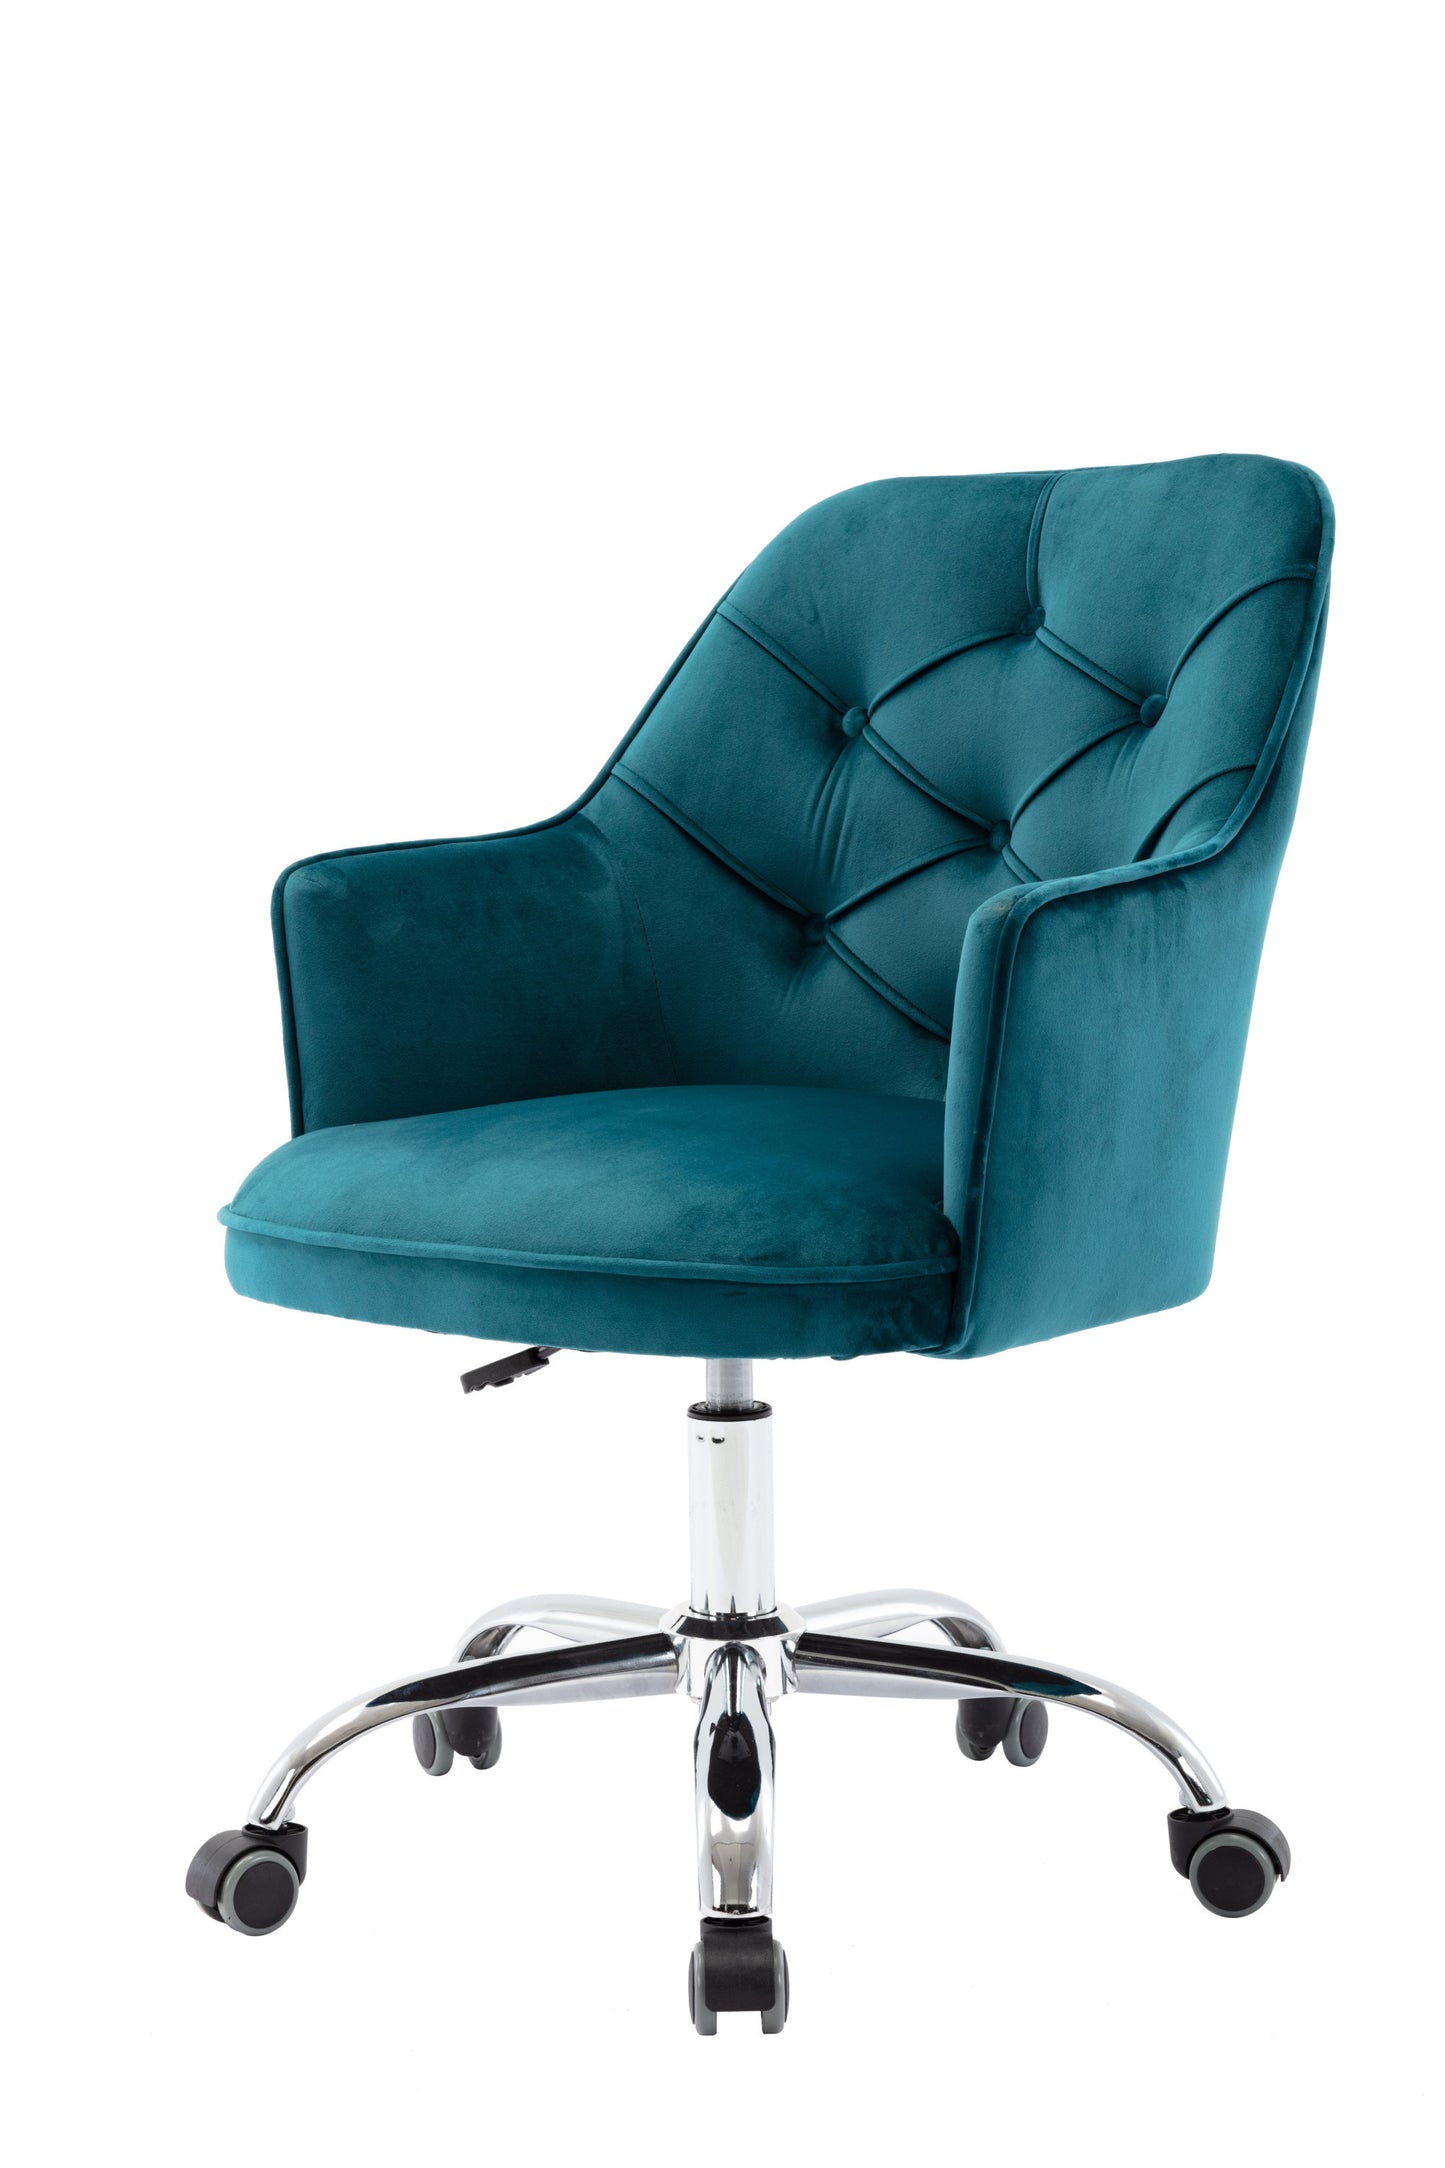 Velvet Swivel Shell Chair for Living Room, Office chair Modern Leisure Arm Chair LAKE BLUE